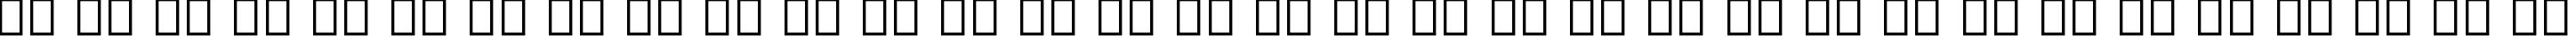 Пример написания русского алфавита шрифтом EPTA GLYPHS